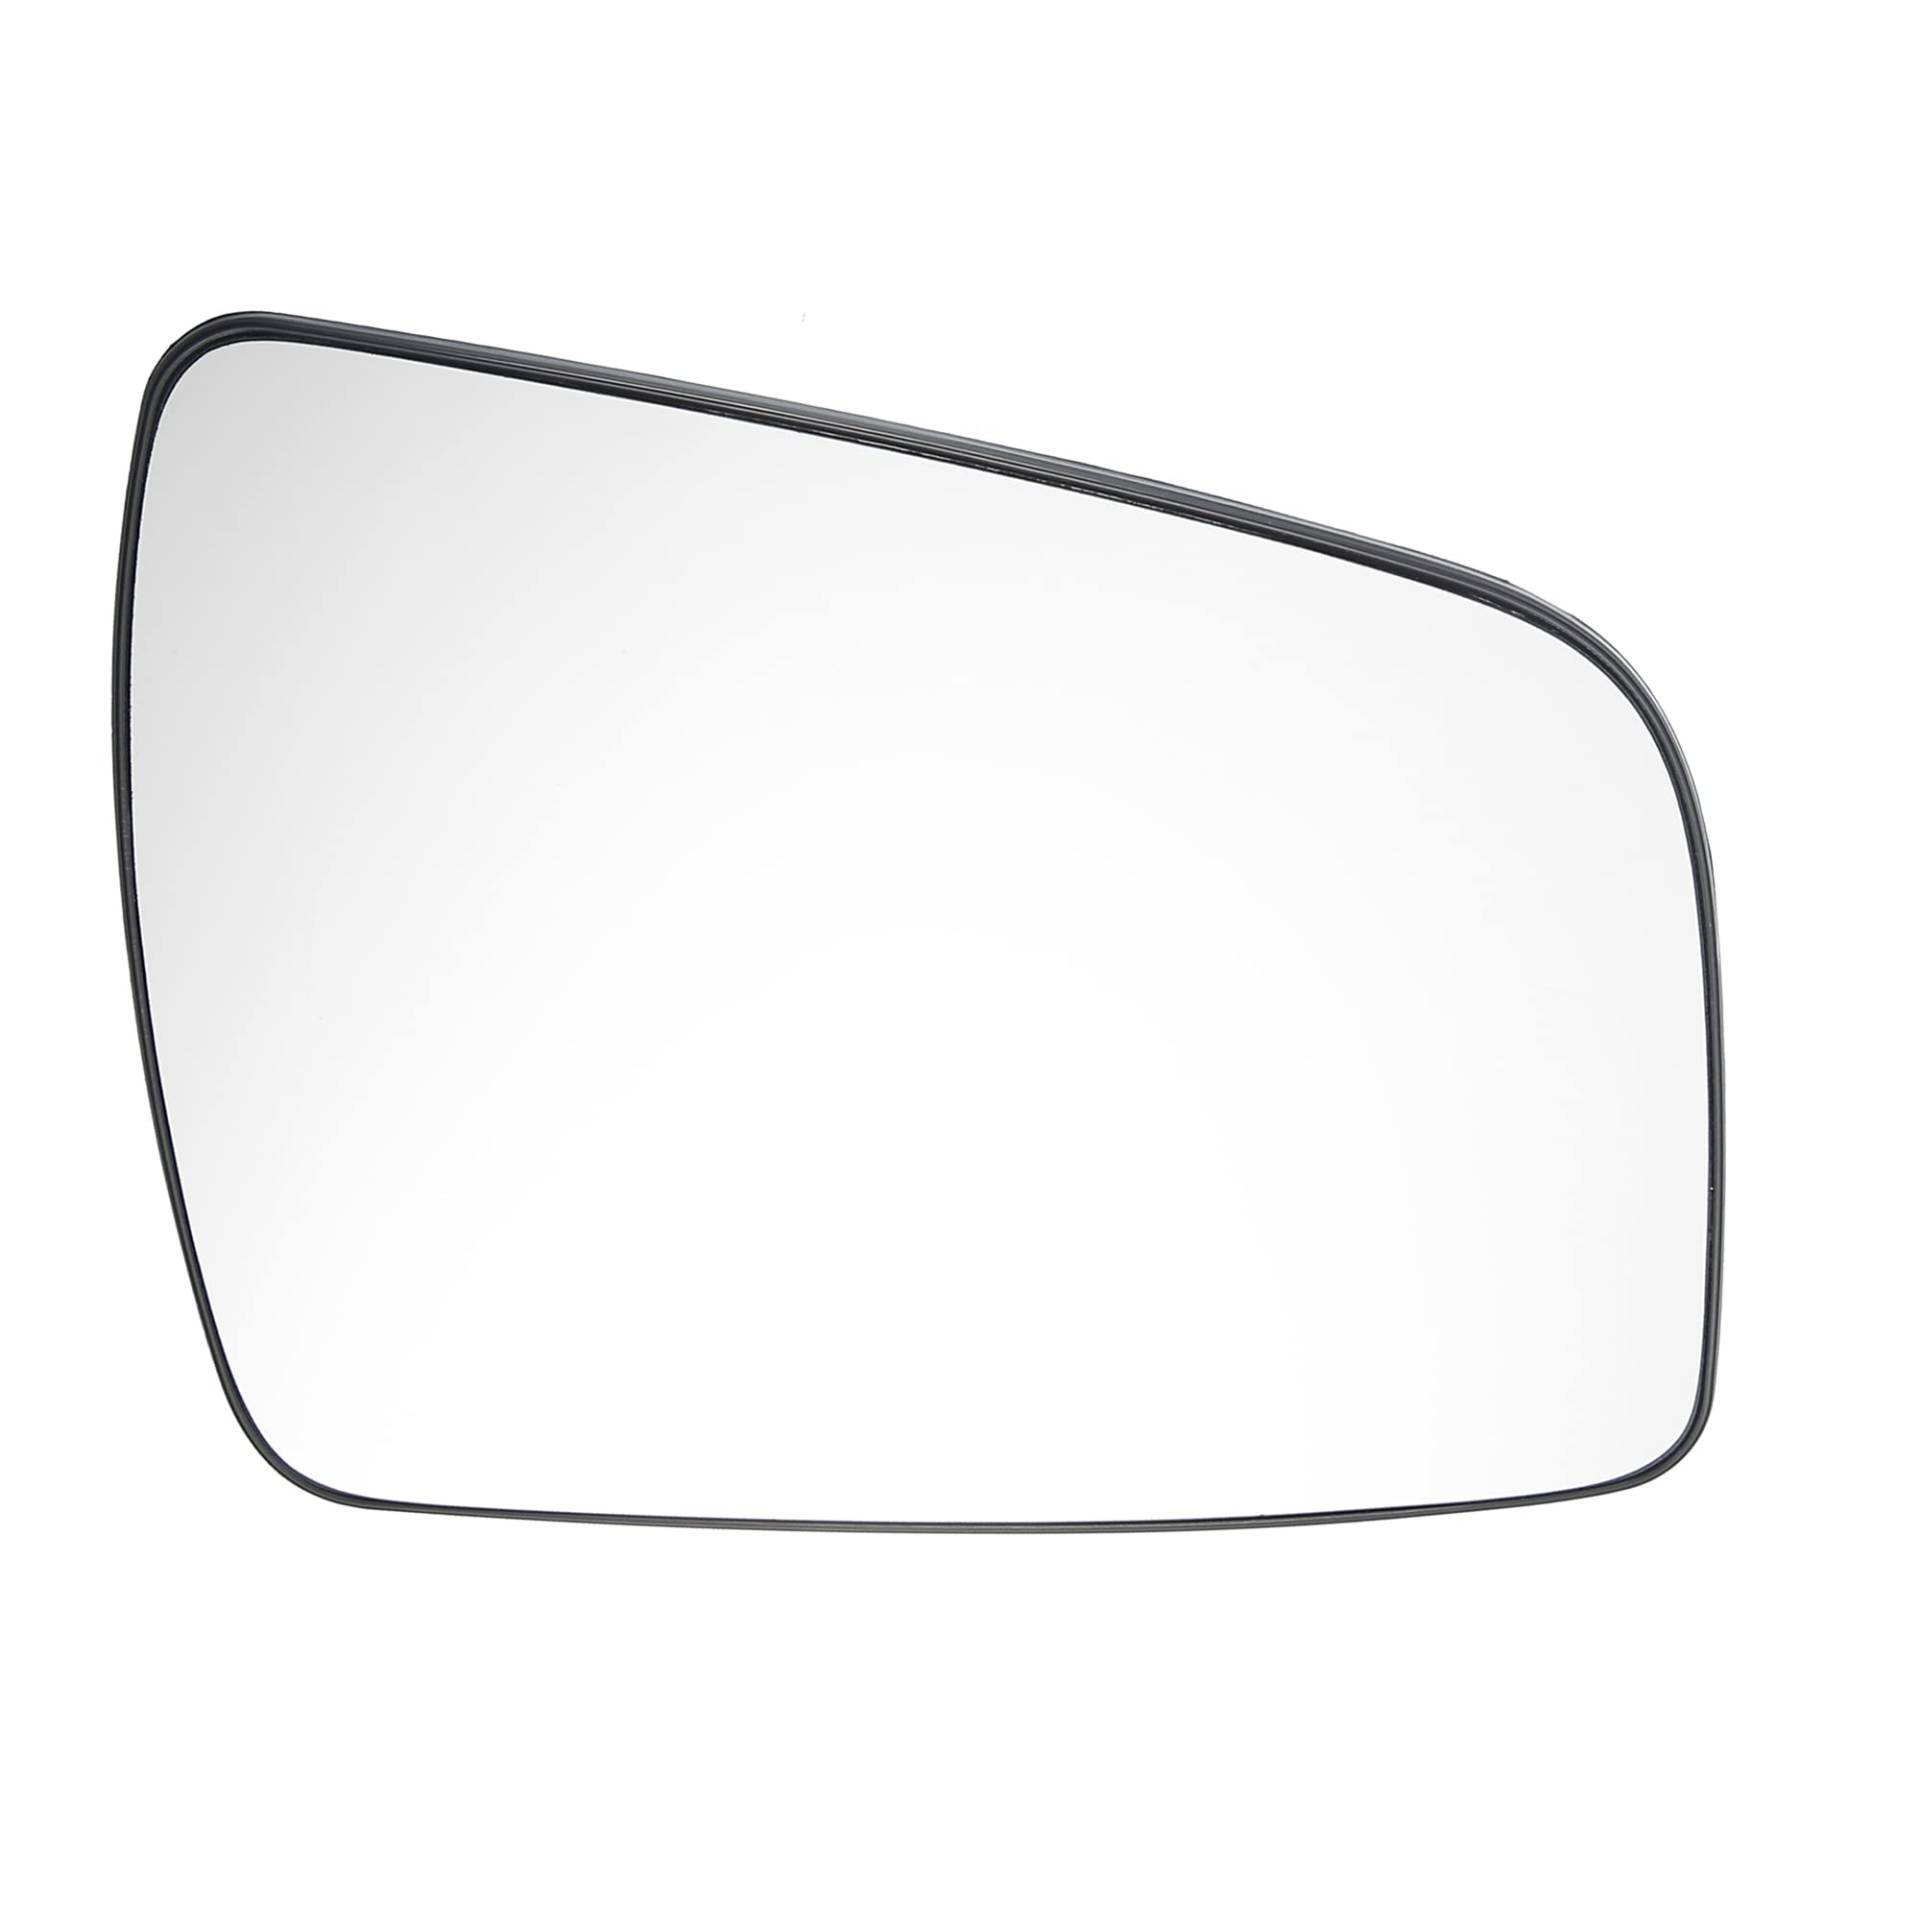 A ABSOPRO Spiegelglas Ersatz Auto Rückspiegelglas Rechts Seitenspiegel Beheiztem Flügelspiegelglas für Opel Zafira B 2009-2014 von A ABSOPRO